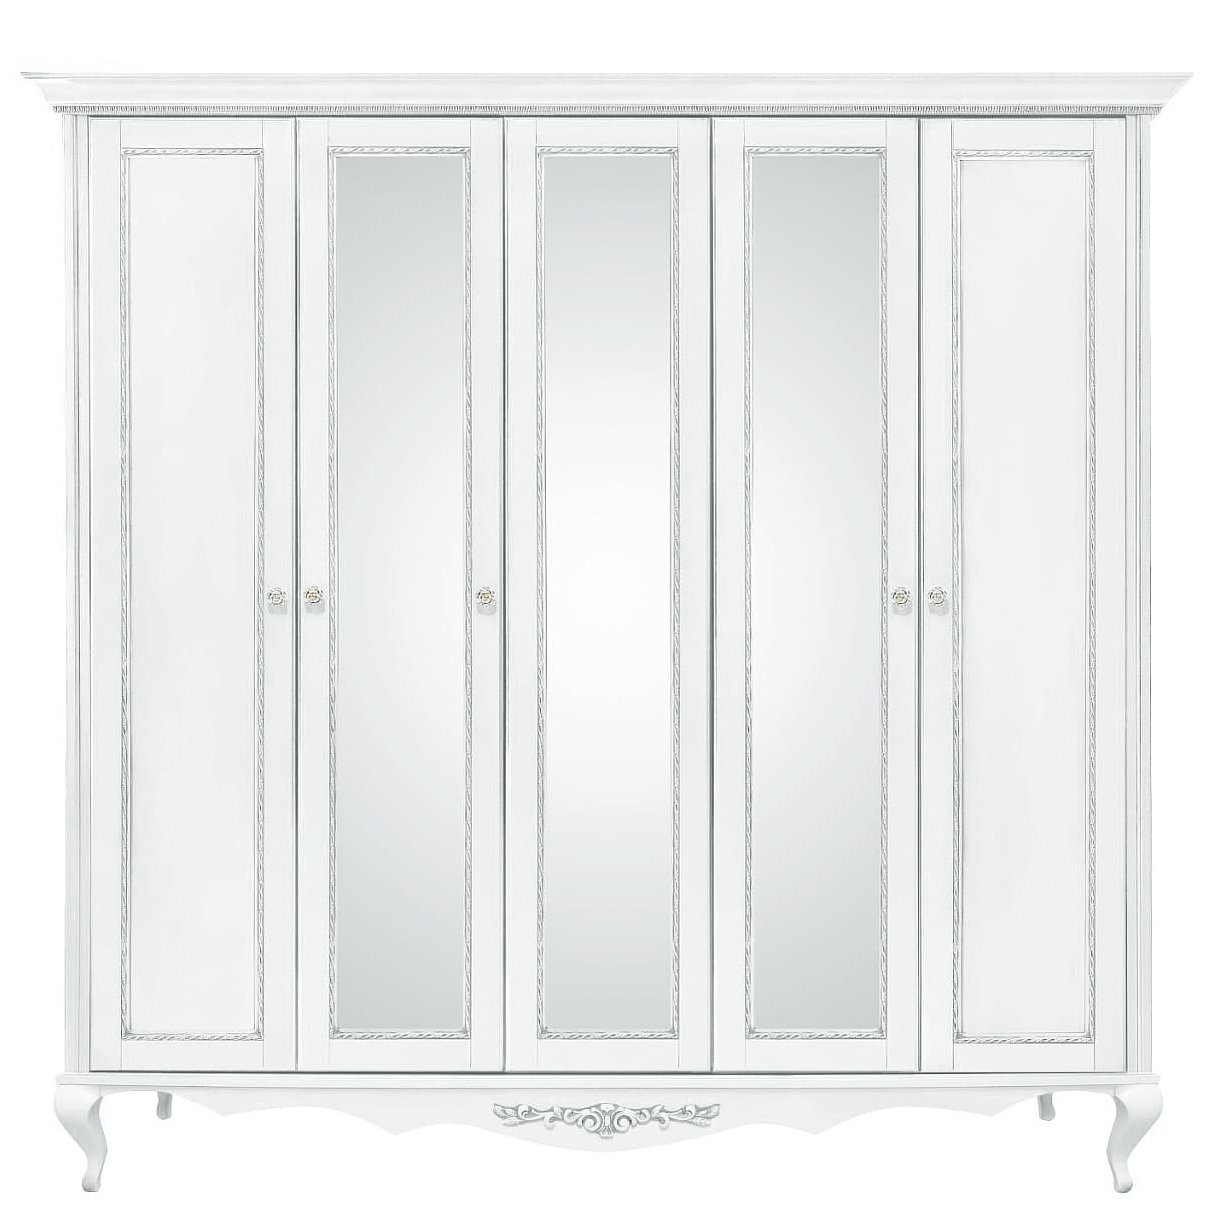 Шкаф платяной Timber Неаполь, 5-ти дверный с зеркалами 249x65x227 см, цвет: белый с серебром (Т-525/BA)Т-525